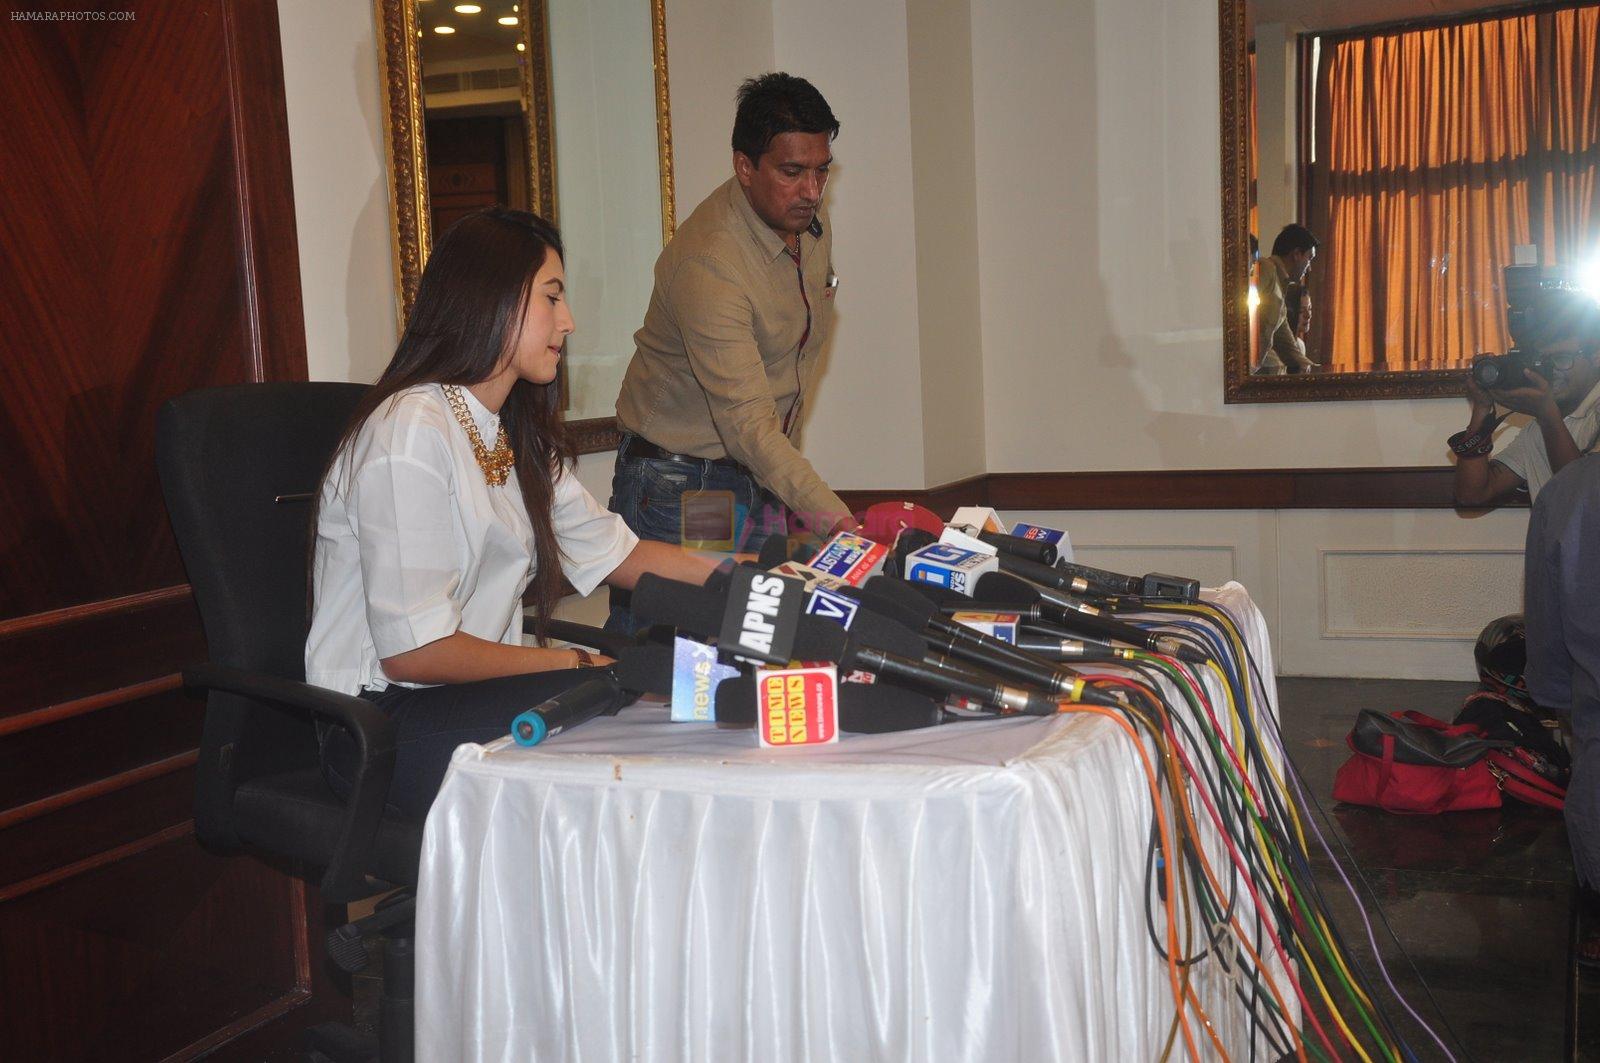 Gauhar Khan speaks to media in Mumbai on 2nd Dec 2014